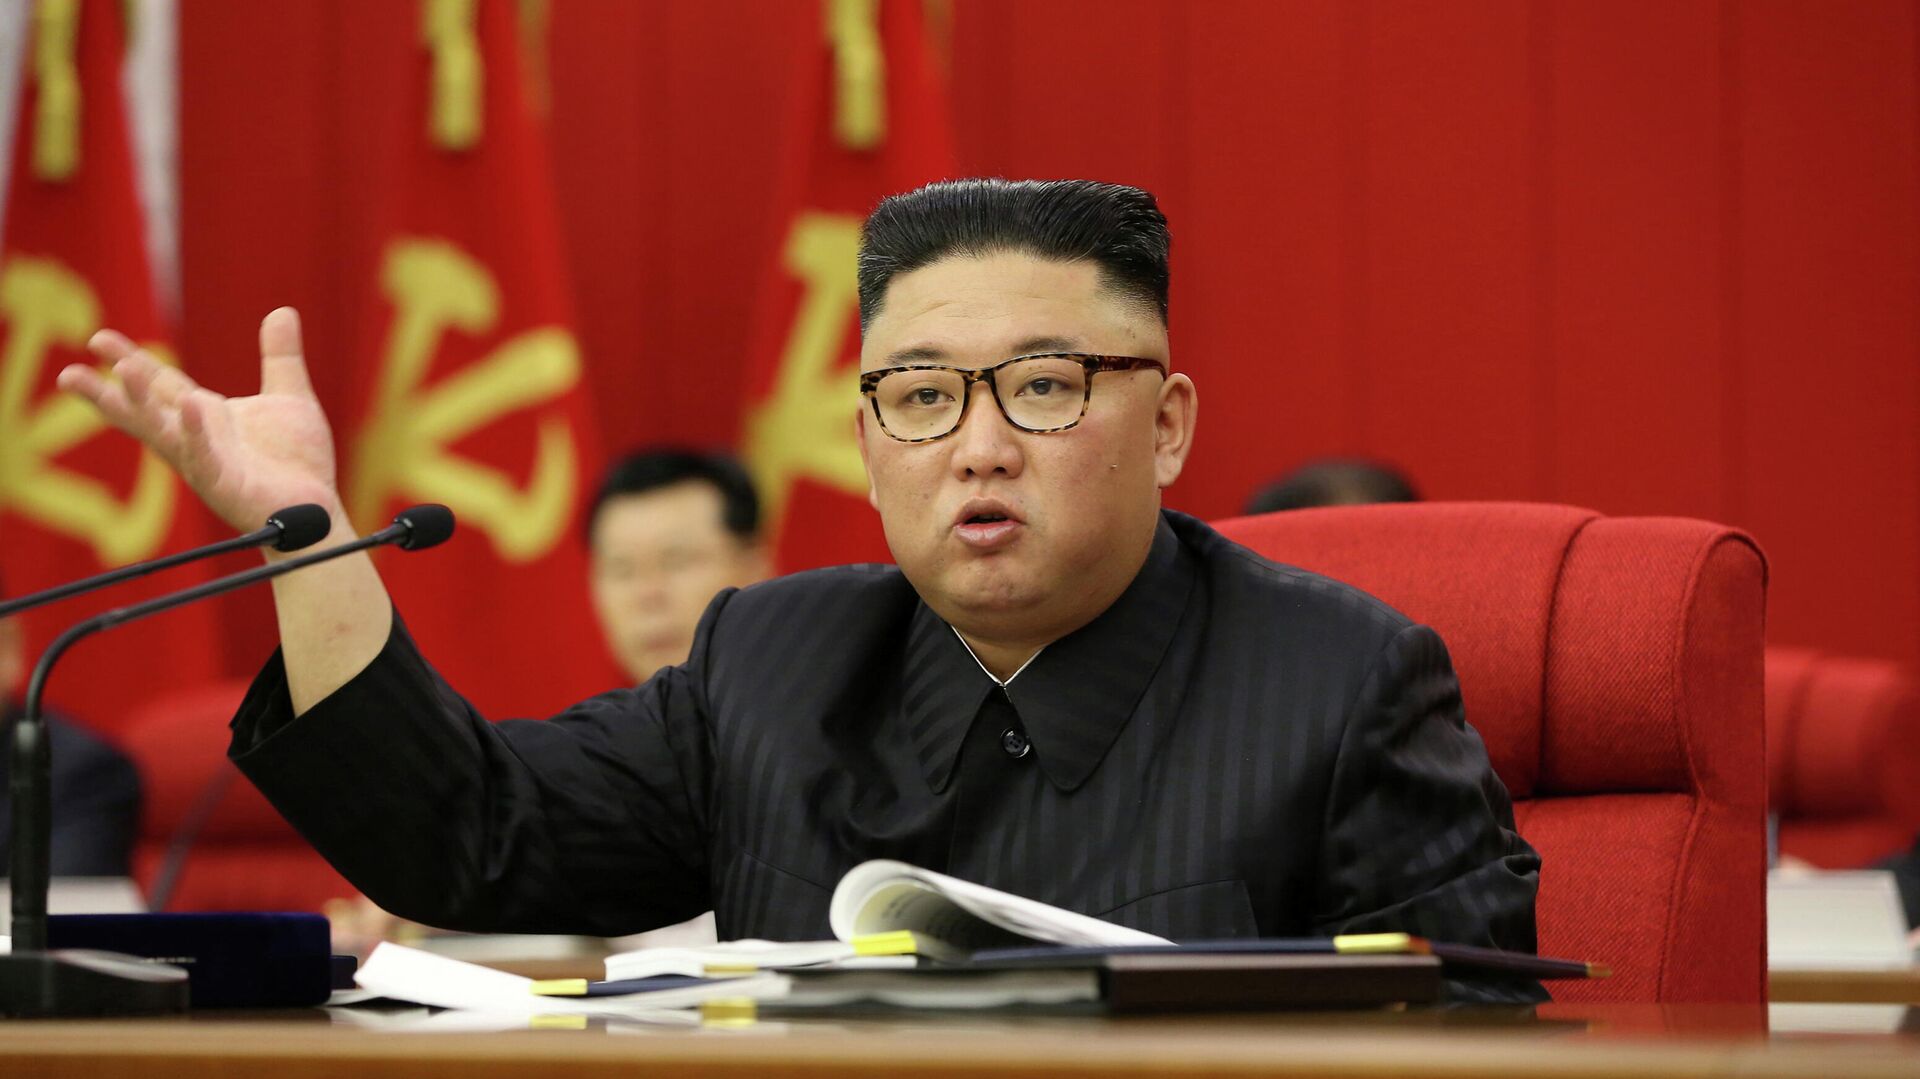 Лидер Северной Кореи Ким Чен Ын выступает на открытии 3-го пленарного заседания 8-го Центрального комитета Рабочей партии Кореи в Пхеньяне, Северная Корея - РИА Новости, 1920, 29.06.2021